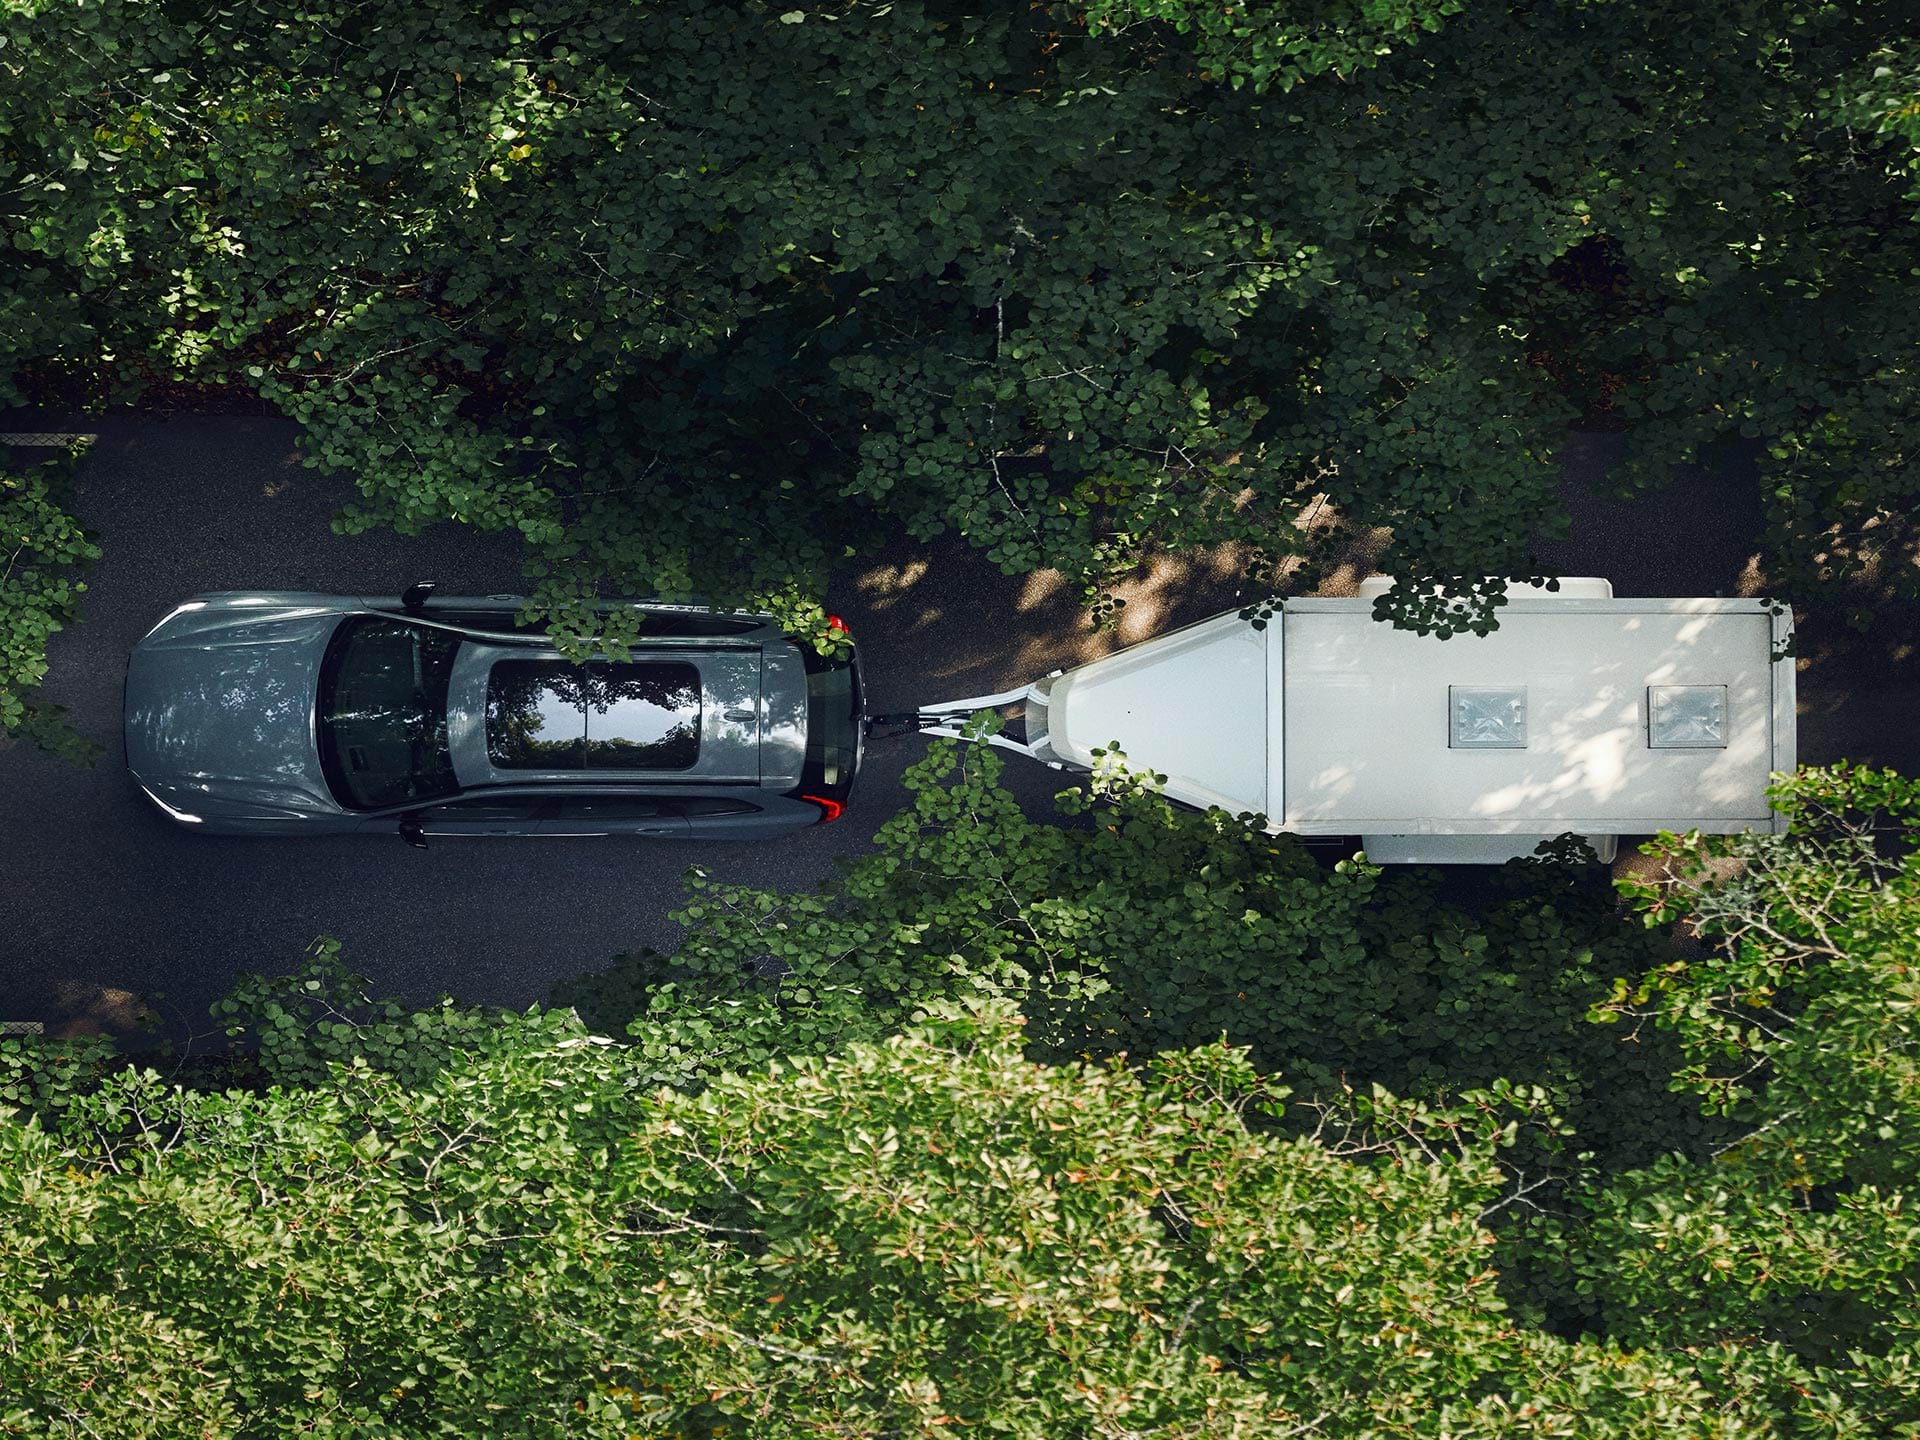 صورة من الأعلى لسيارة فولفو الرياضية متعددة الاستخدامات وهي تقطر مقطورة بيضاء على طول طريق محاط بالأشجار في يوم مشمس.